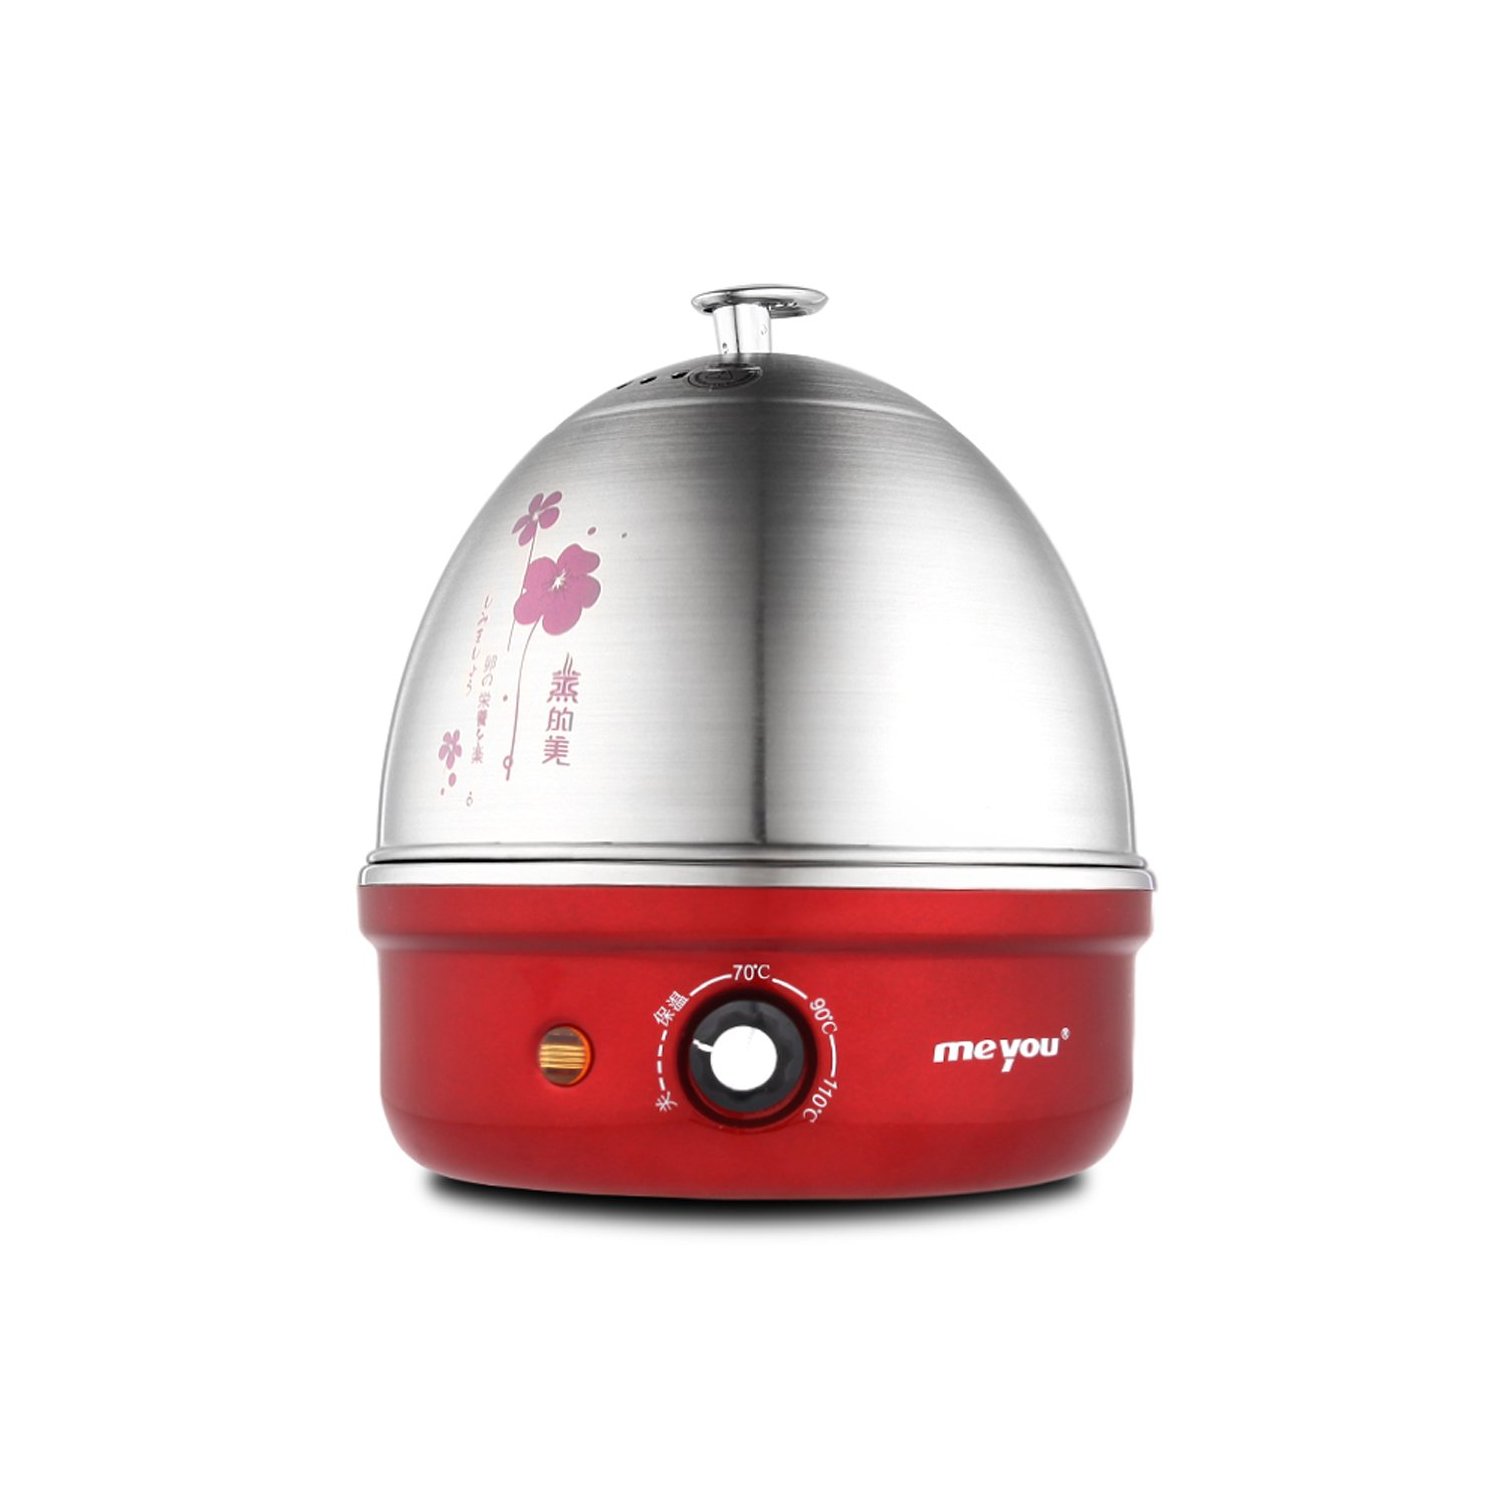 名友MY-35A 多功能全不锈钢煮蛋器 蒸煮器 包邮 特价  二年保换